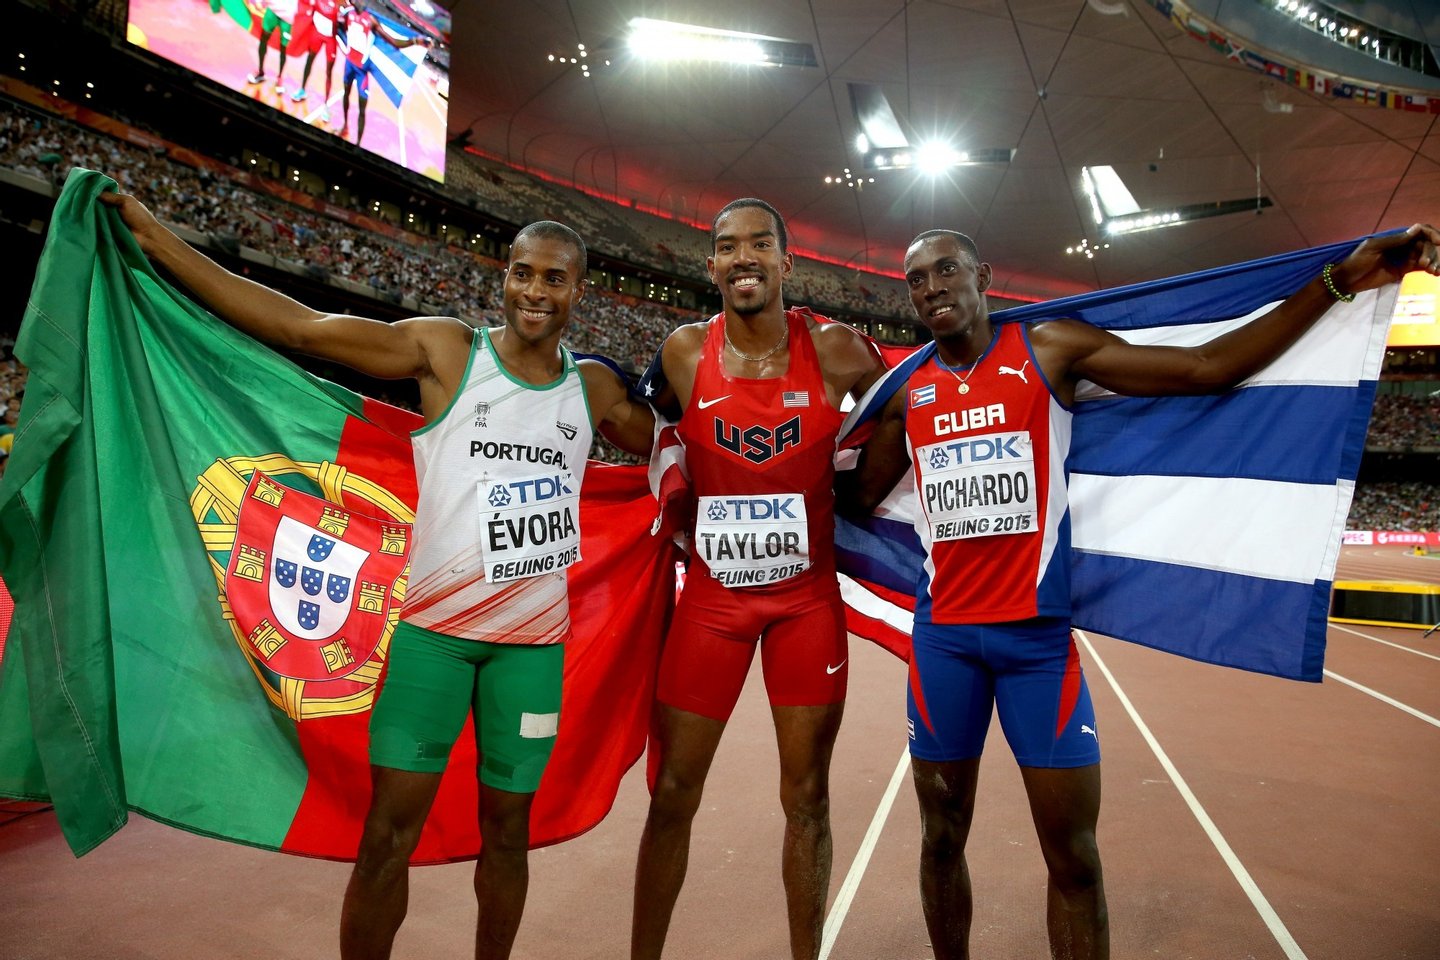 Nelson Évora ganha bronze em mundial de atletismo - Observador